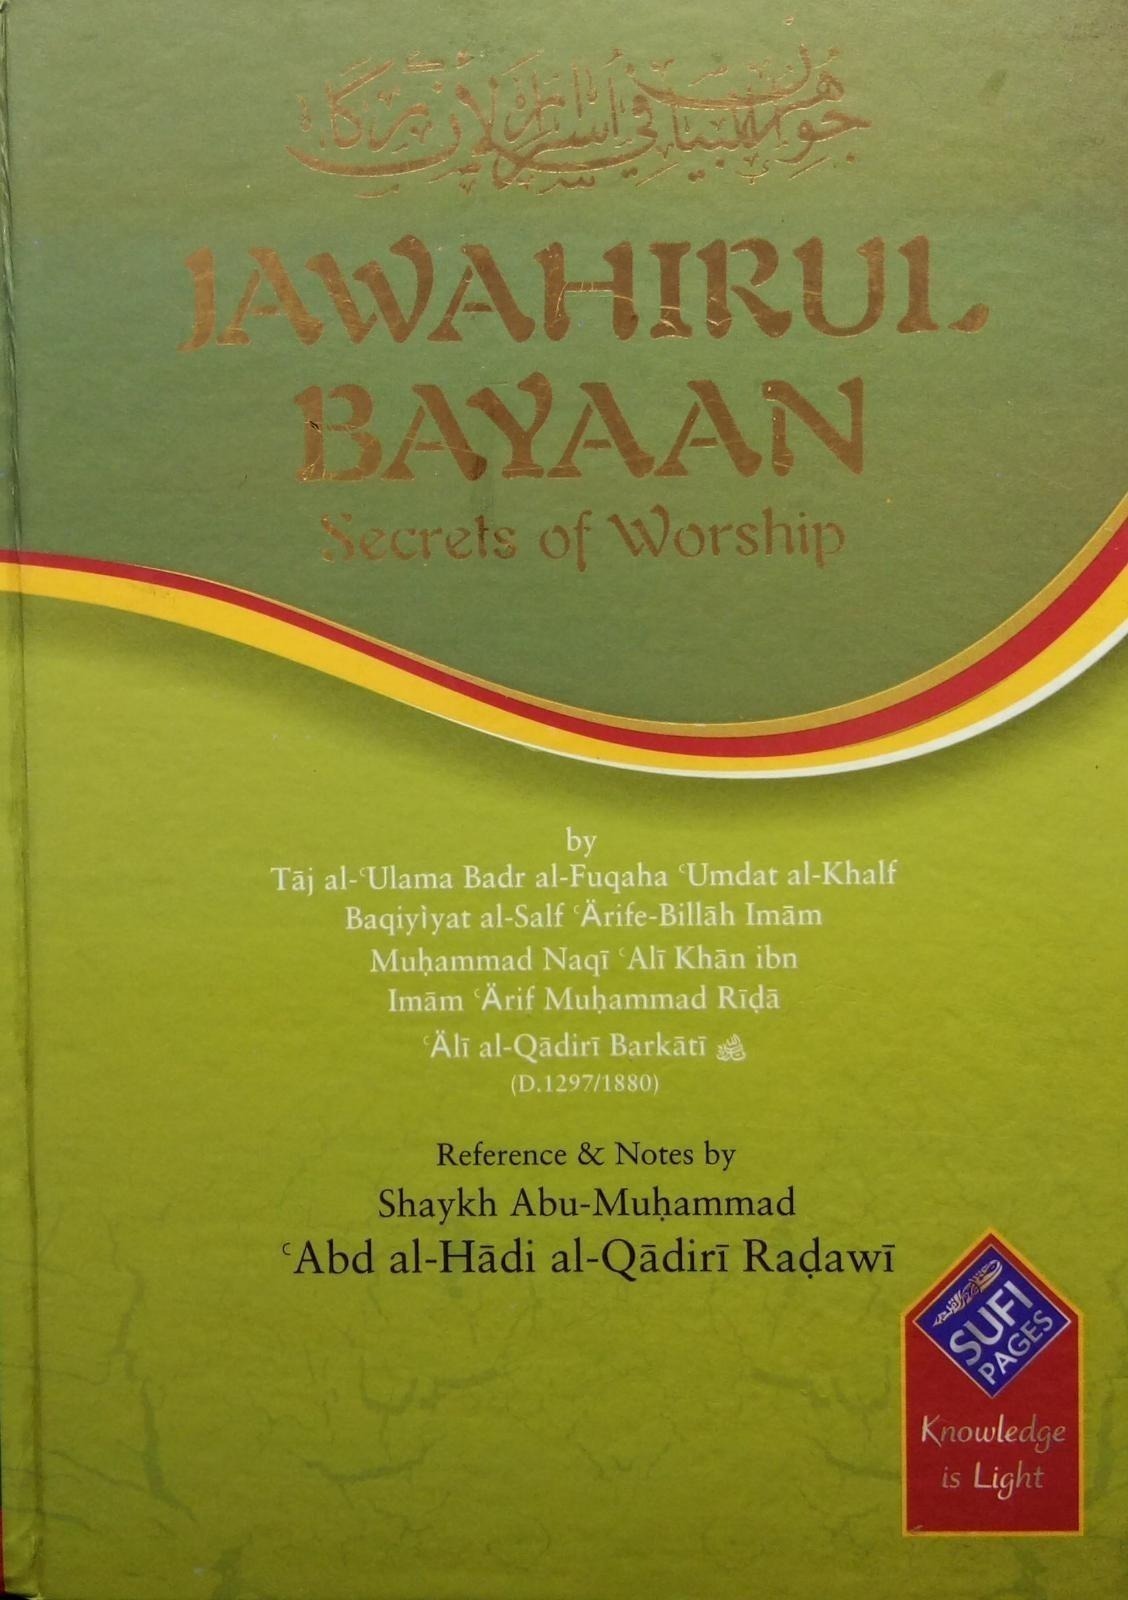 Jawahirul Bayaan Secrets of Worship